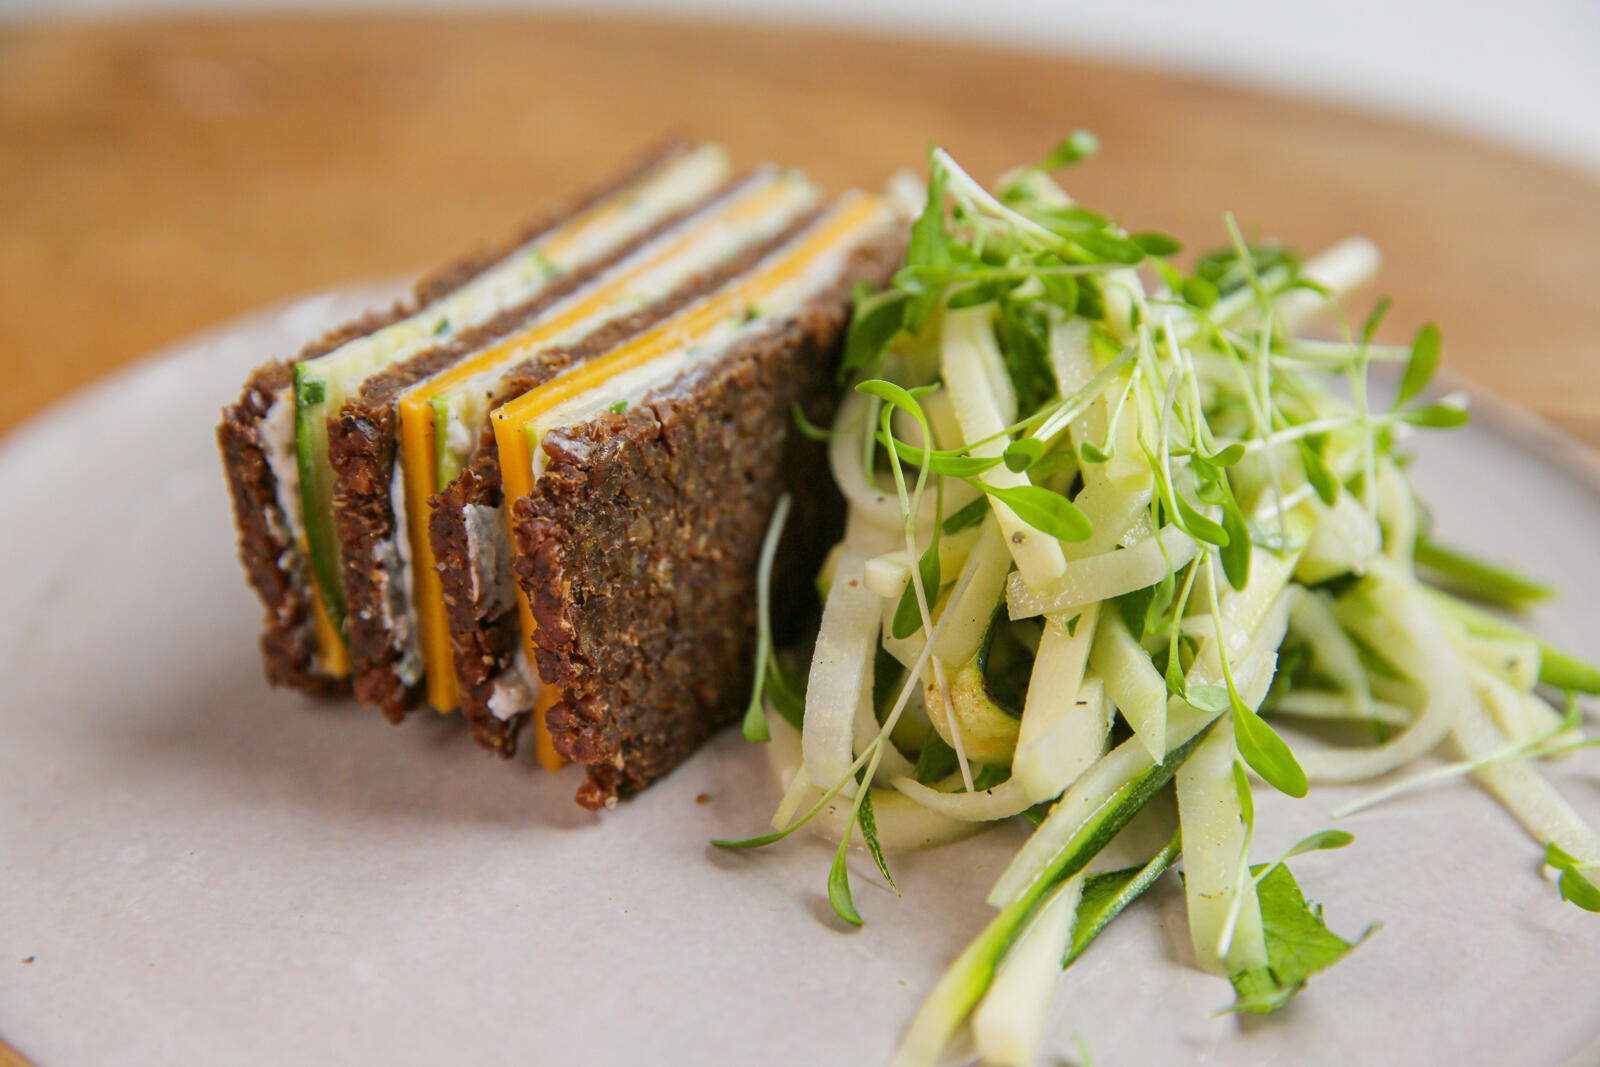 Club sandwich van pumpernickel met courgette, koolrabi en mierikswortel